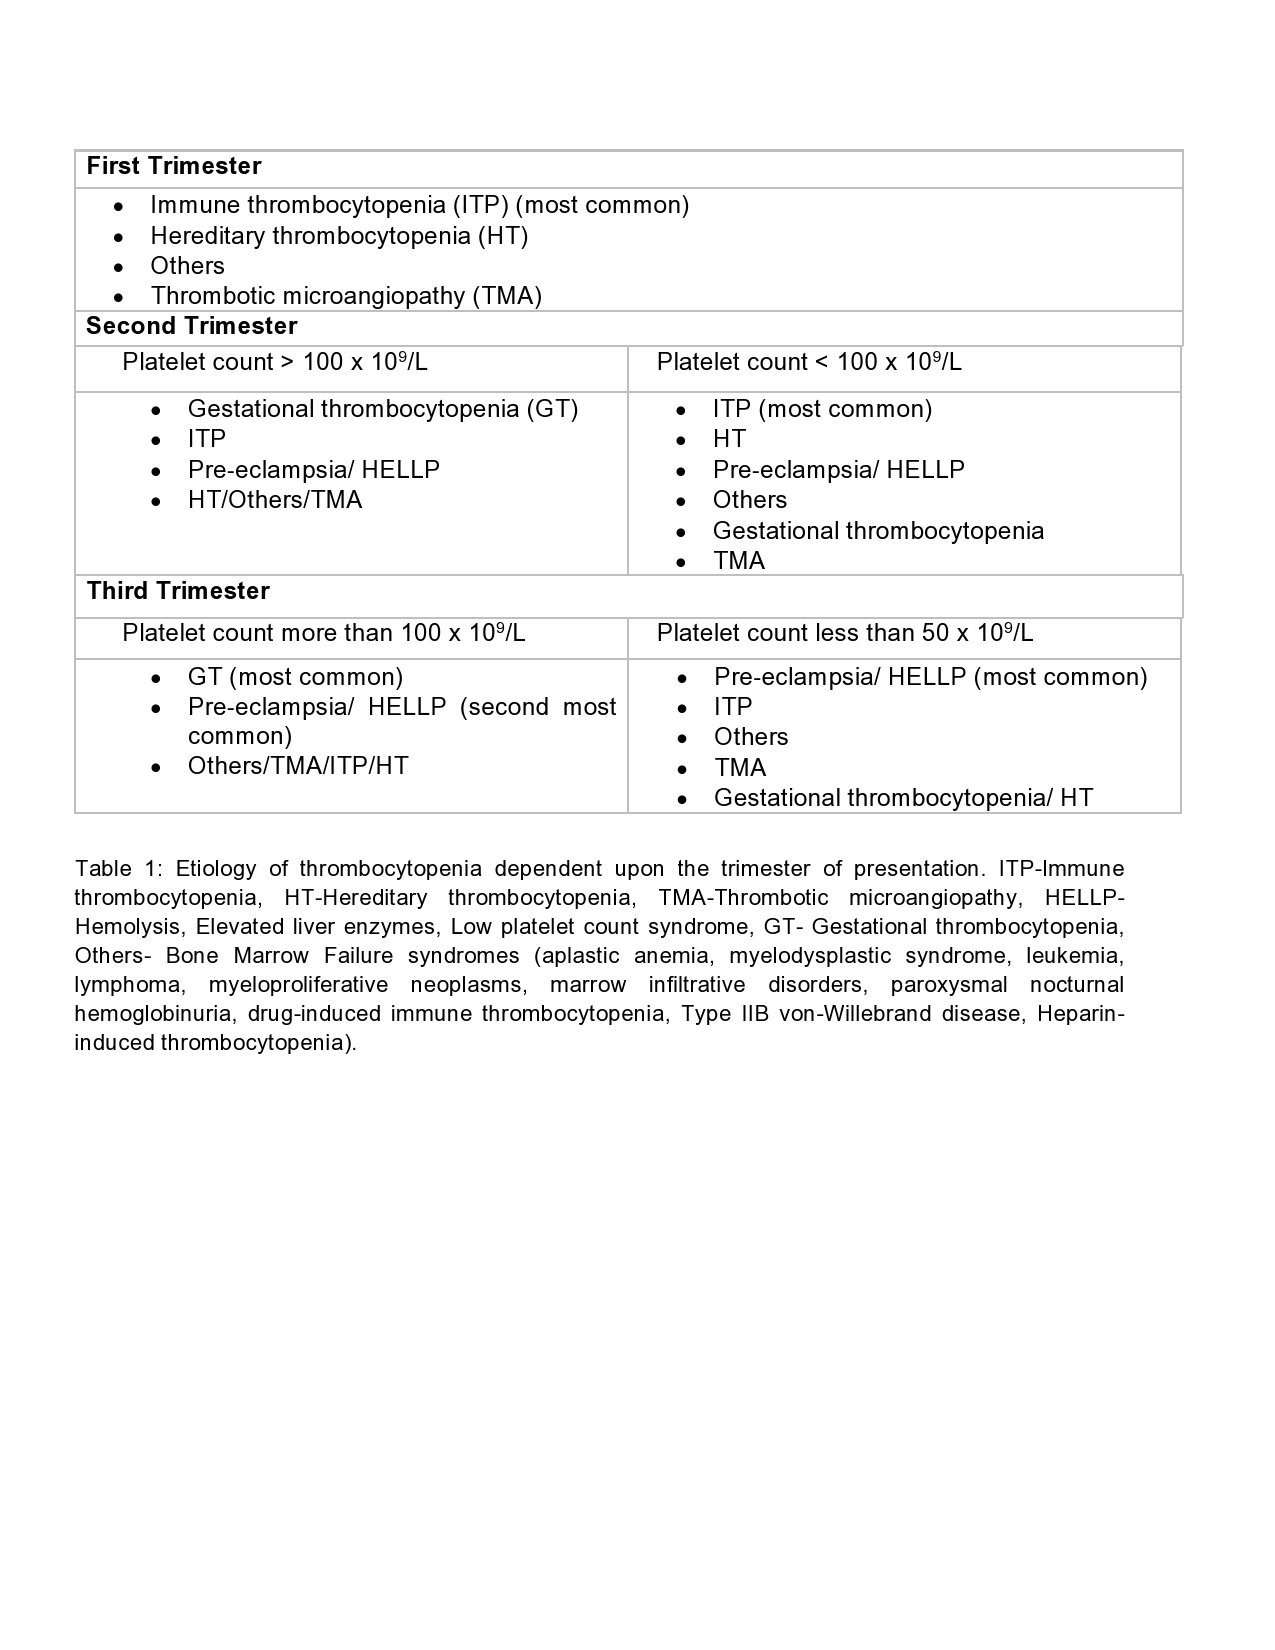 Table 1 - Diagnostic criteria for severe P.falciparum malaria. 